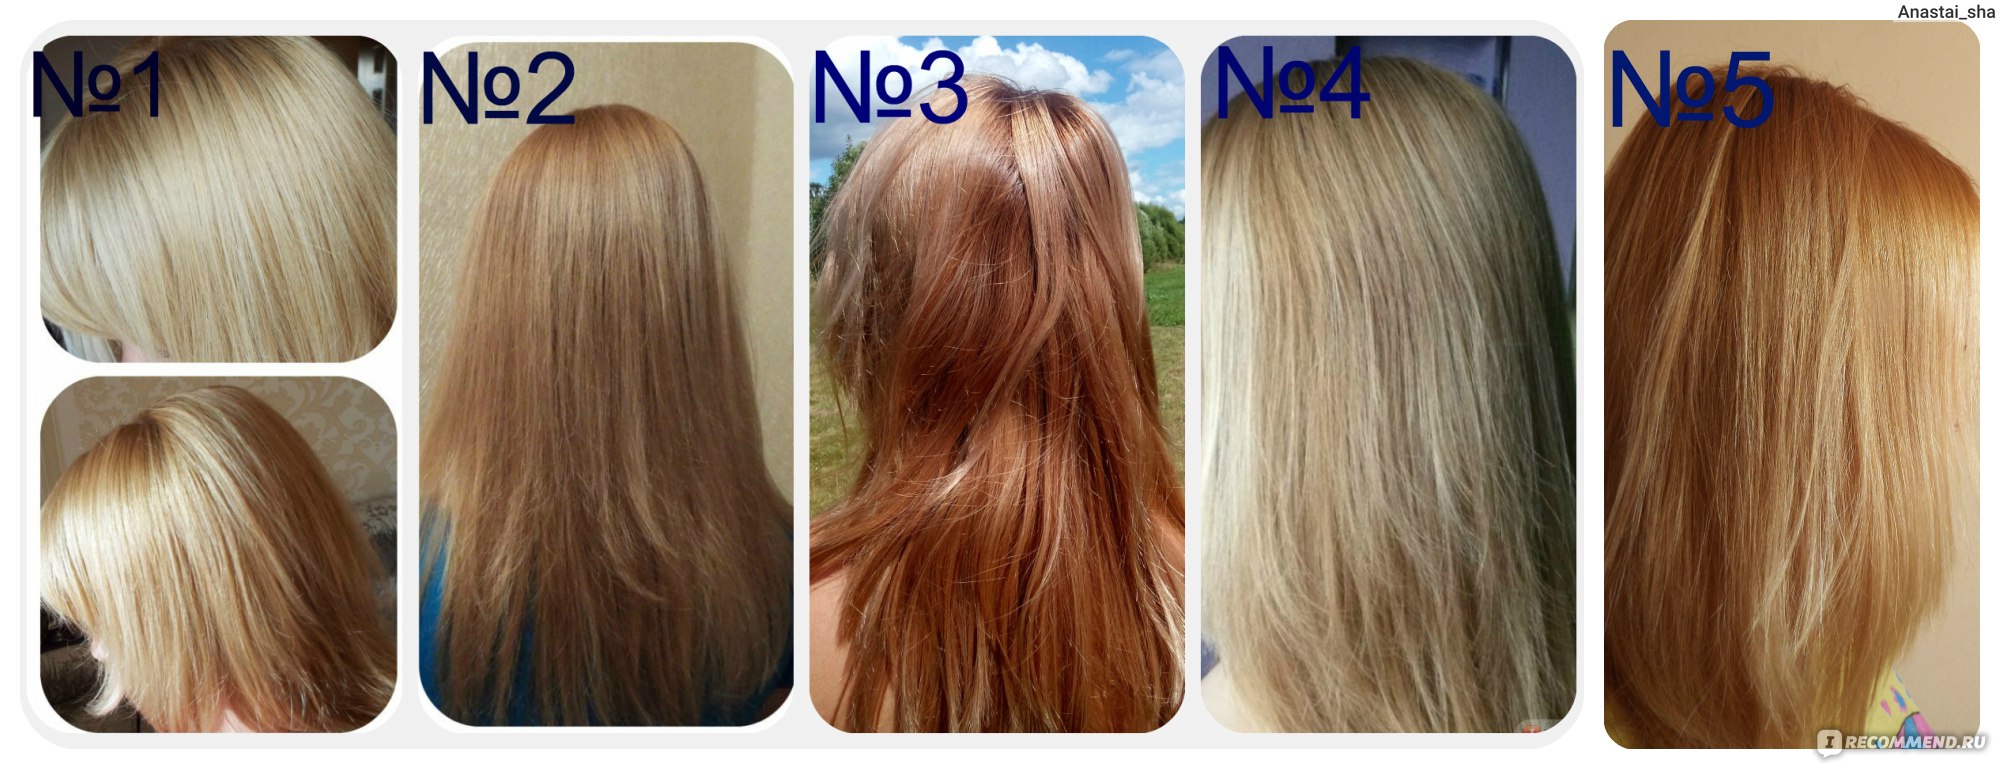 Песочный блонд цвет волос фото до и после окрашивания